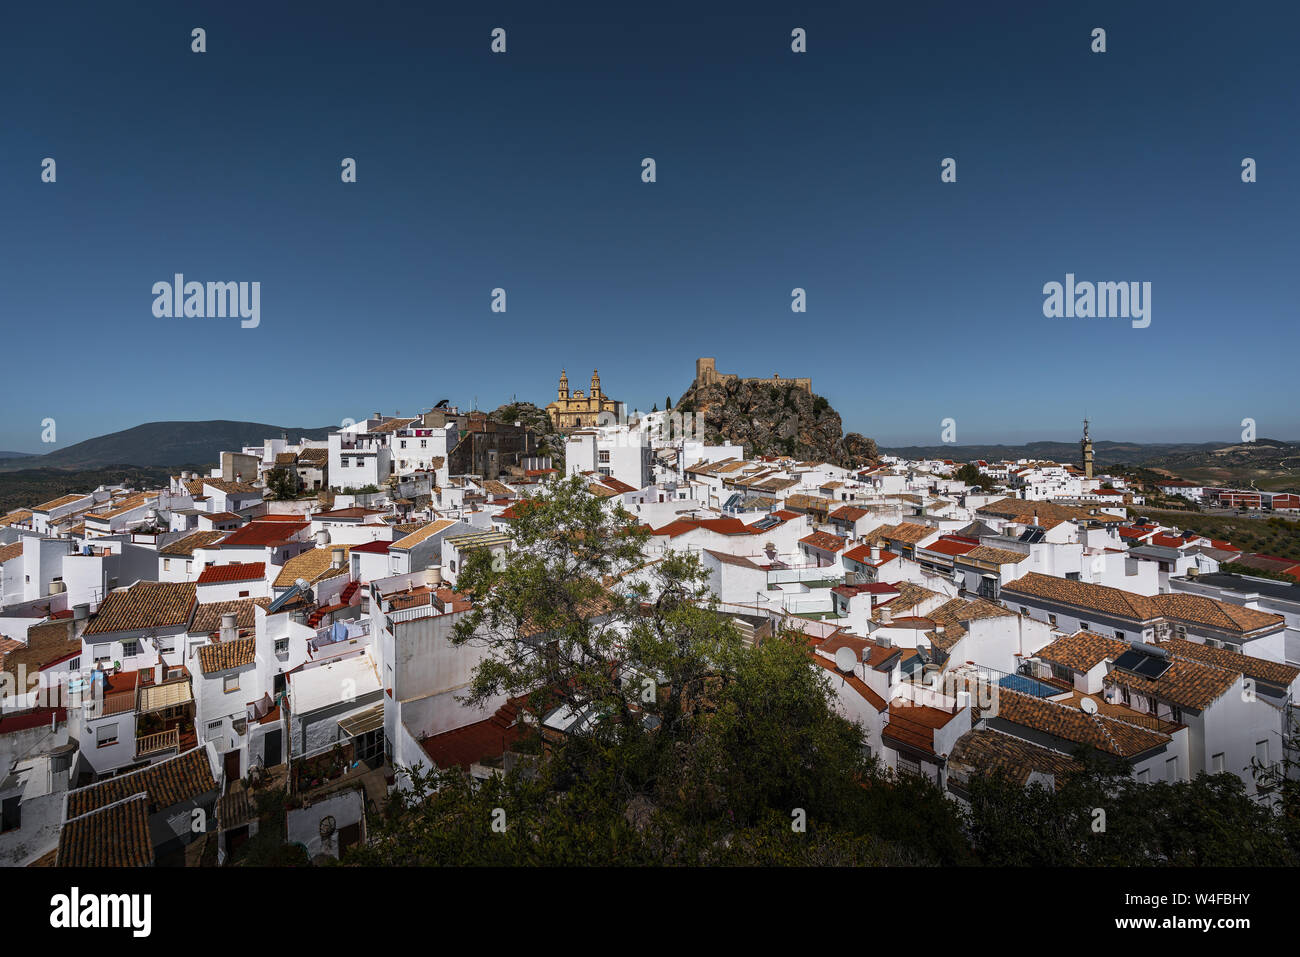 Luftaufnahme von Olvera Stadt mit Burg und Dom - Olvera, Provinz Cadiz, Andalusien, Spanien Stockfoto